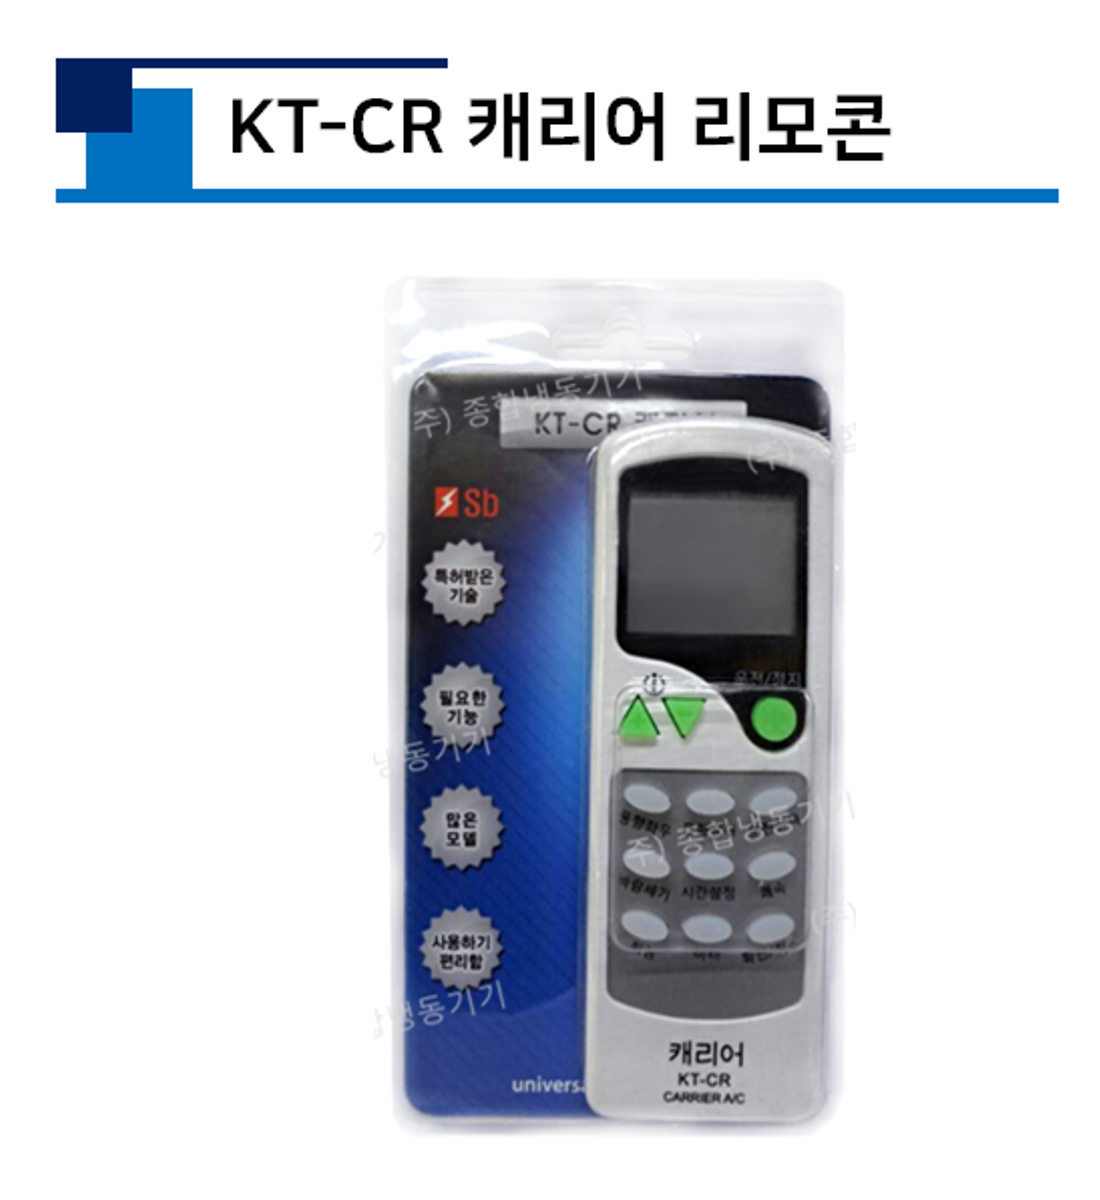 KT-CR 캐리어리모콘